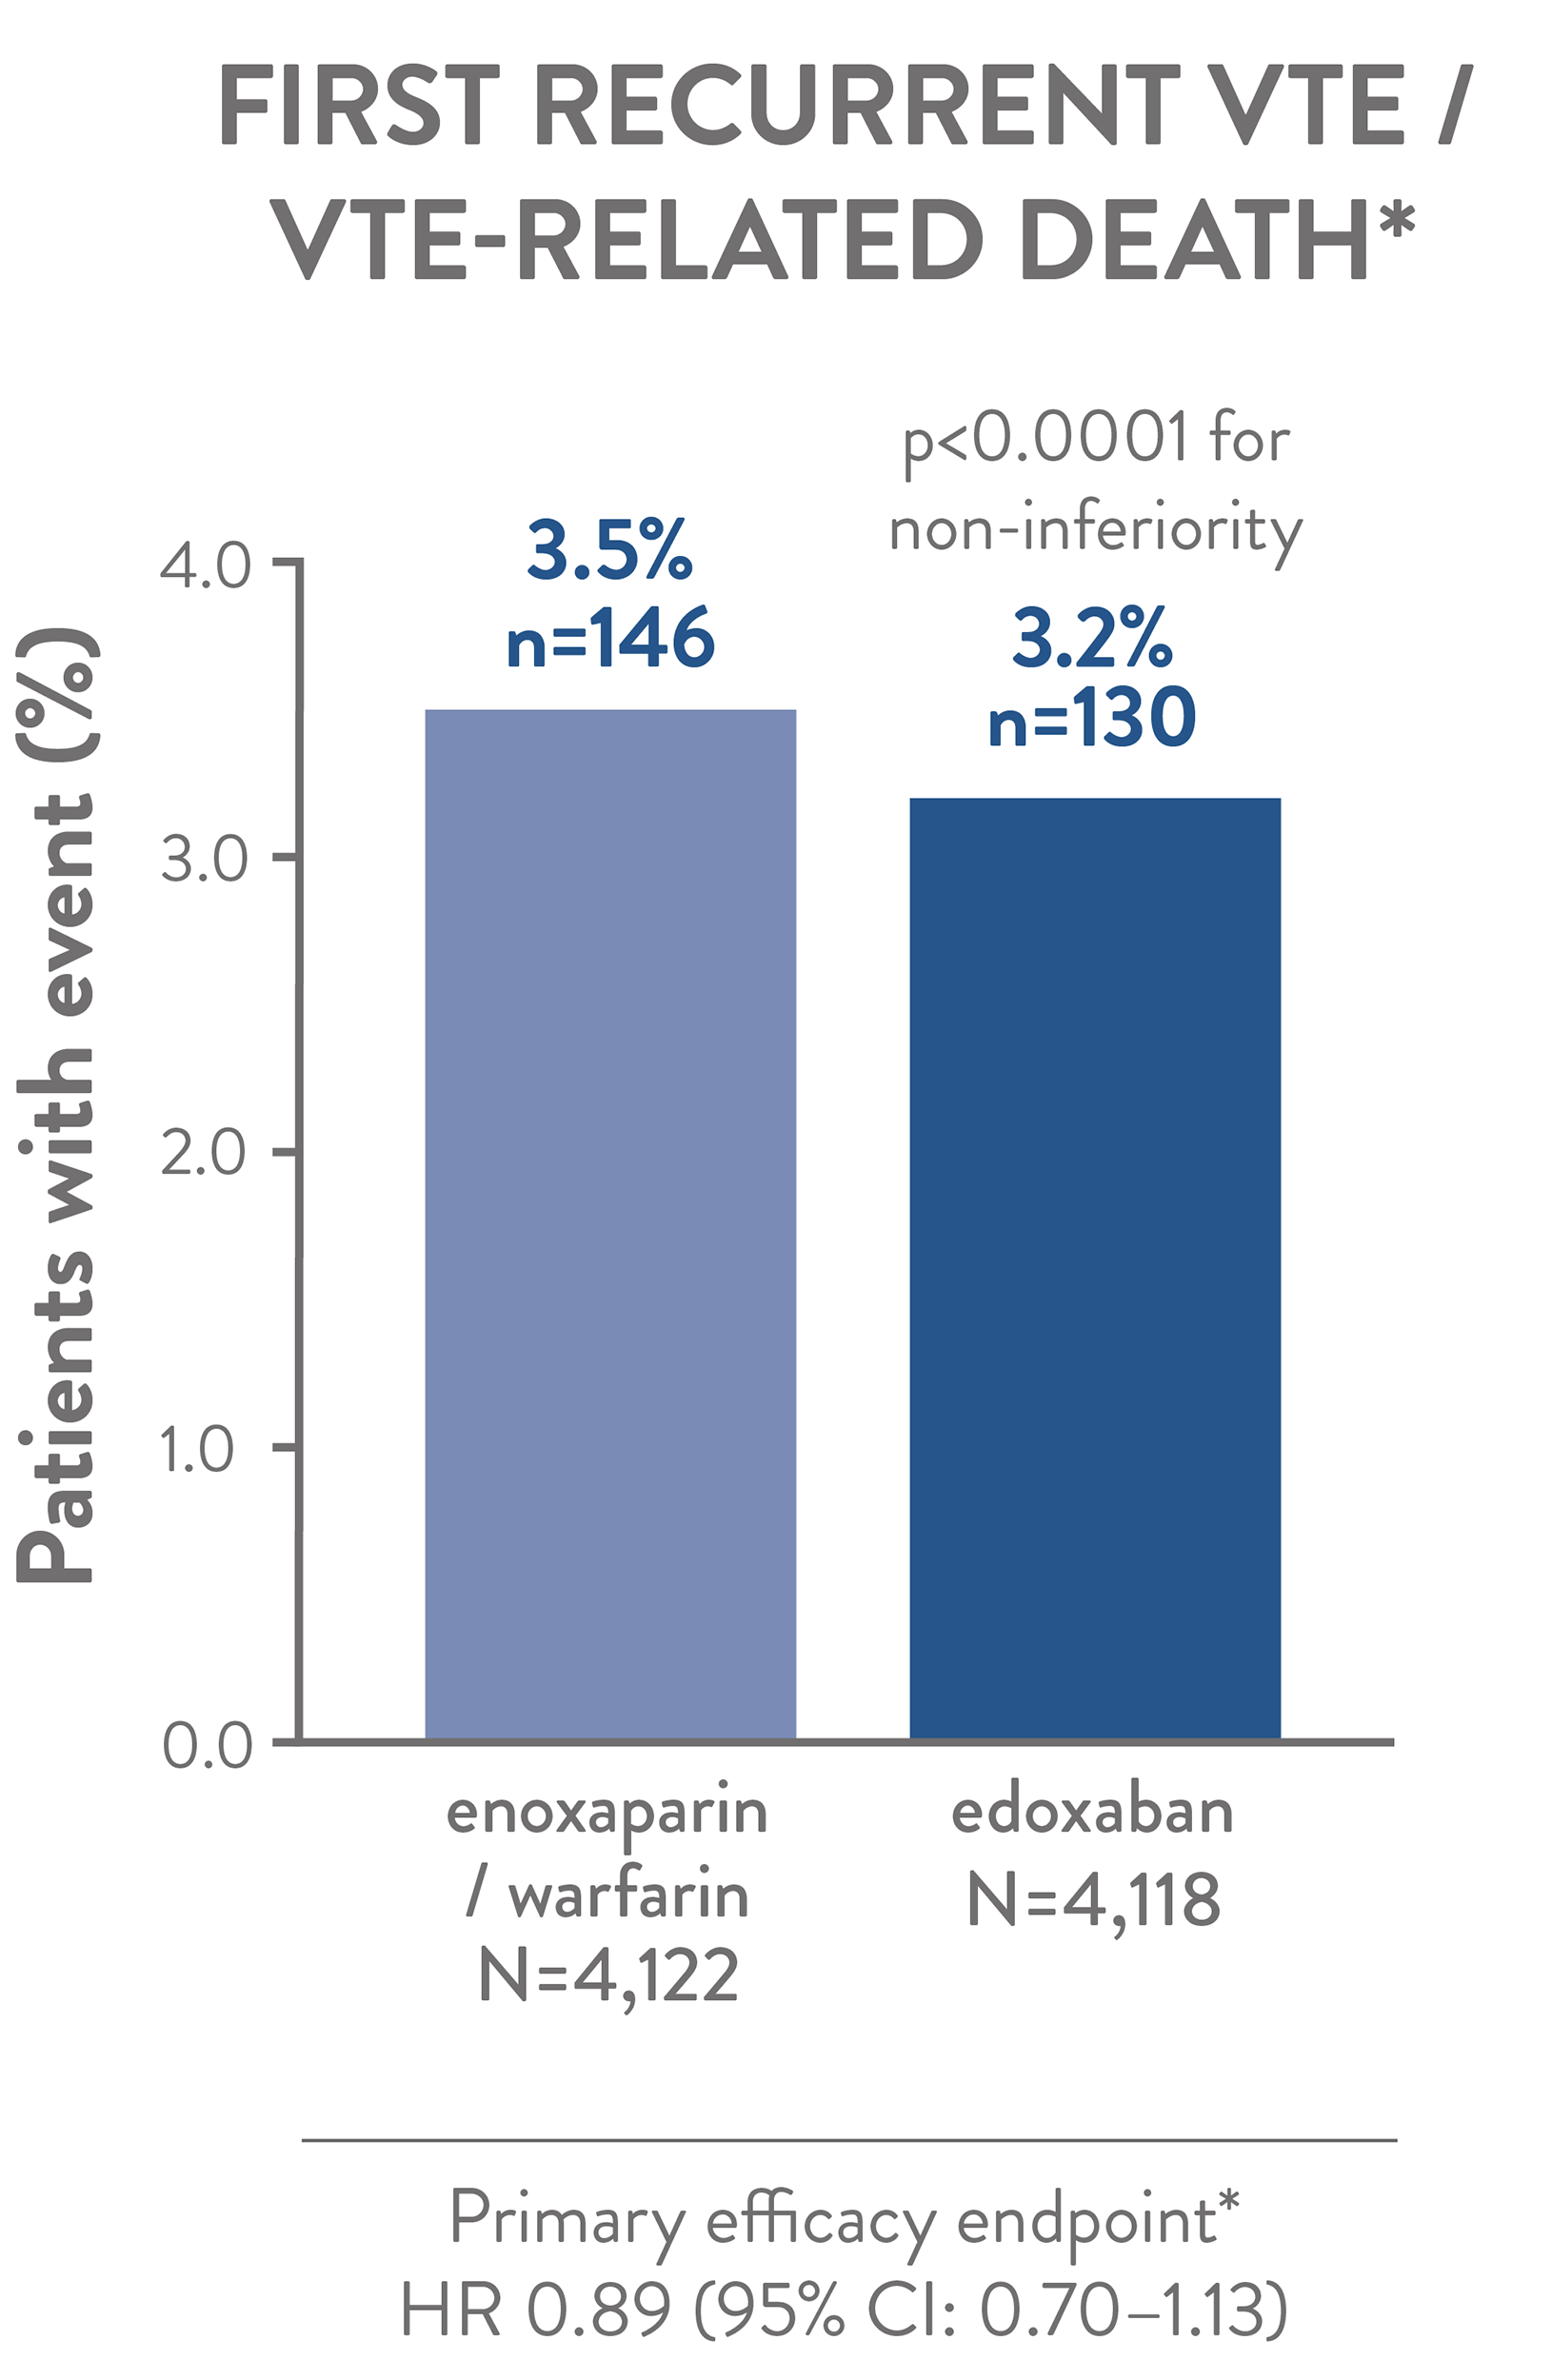 The Efficacy of edoxaban vs. enoxaparin / warfarin: The HOKUSAI-VTE trial